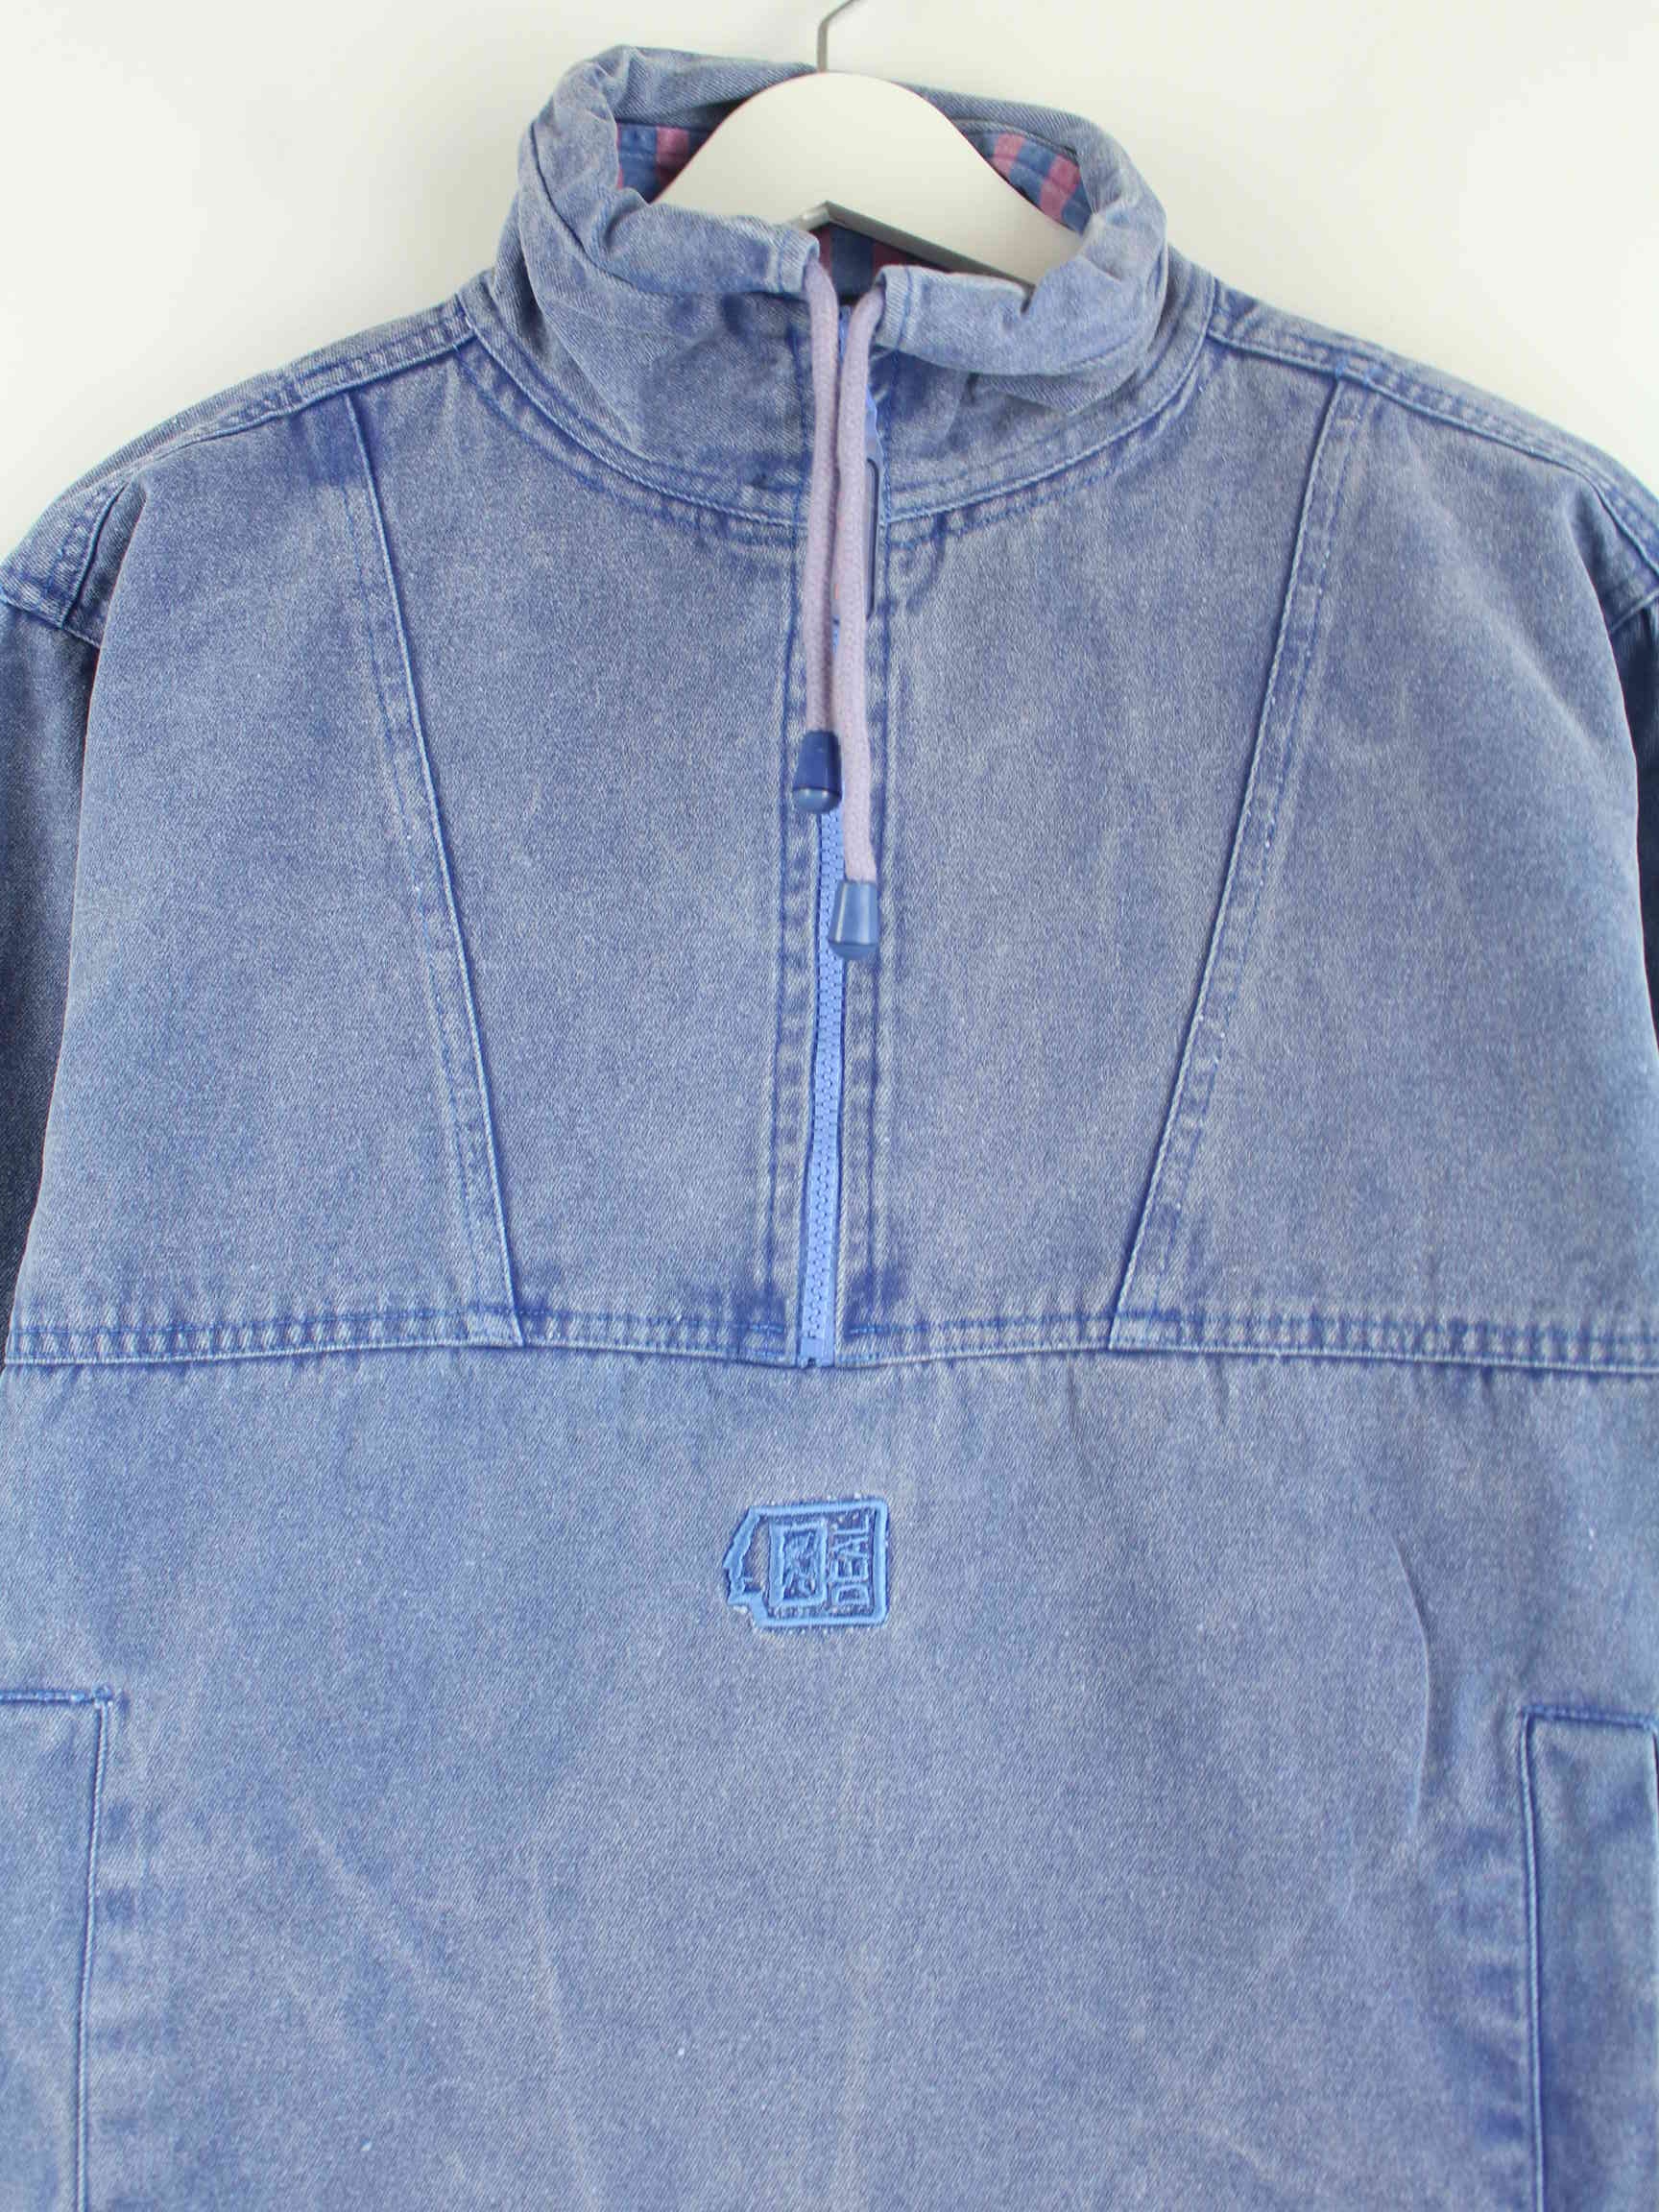 Vintage 90s Half Zip Jacke Blau M (detail image 1)